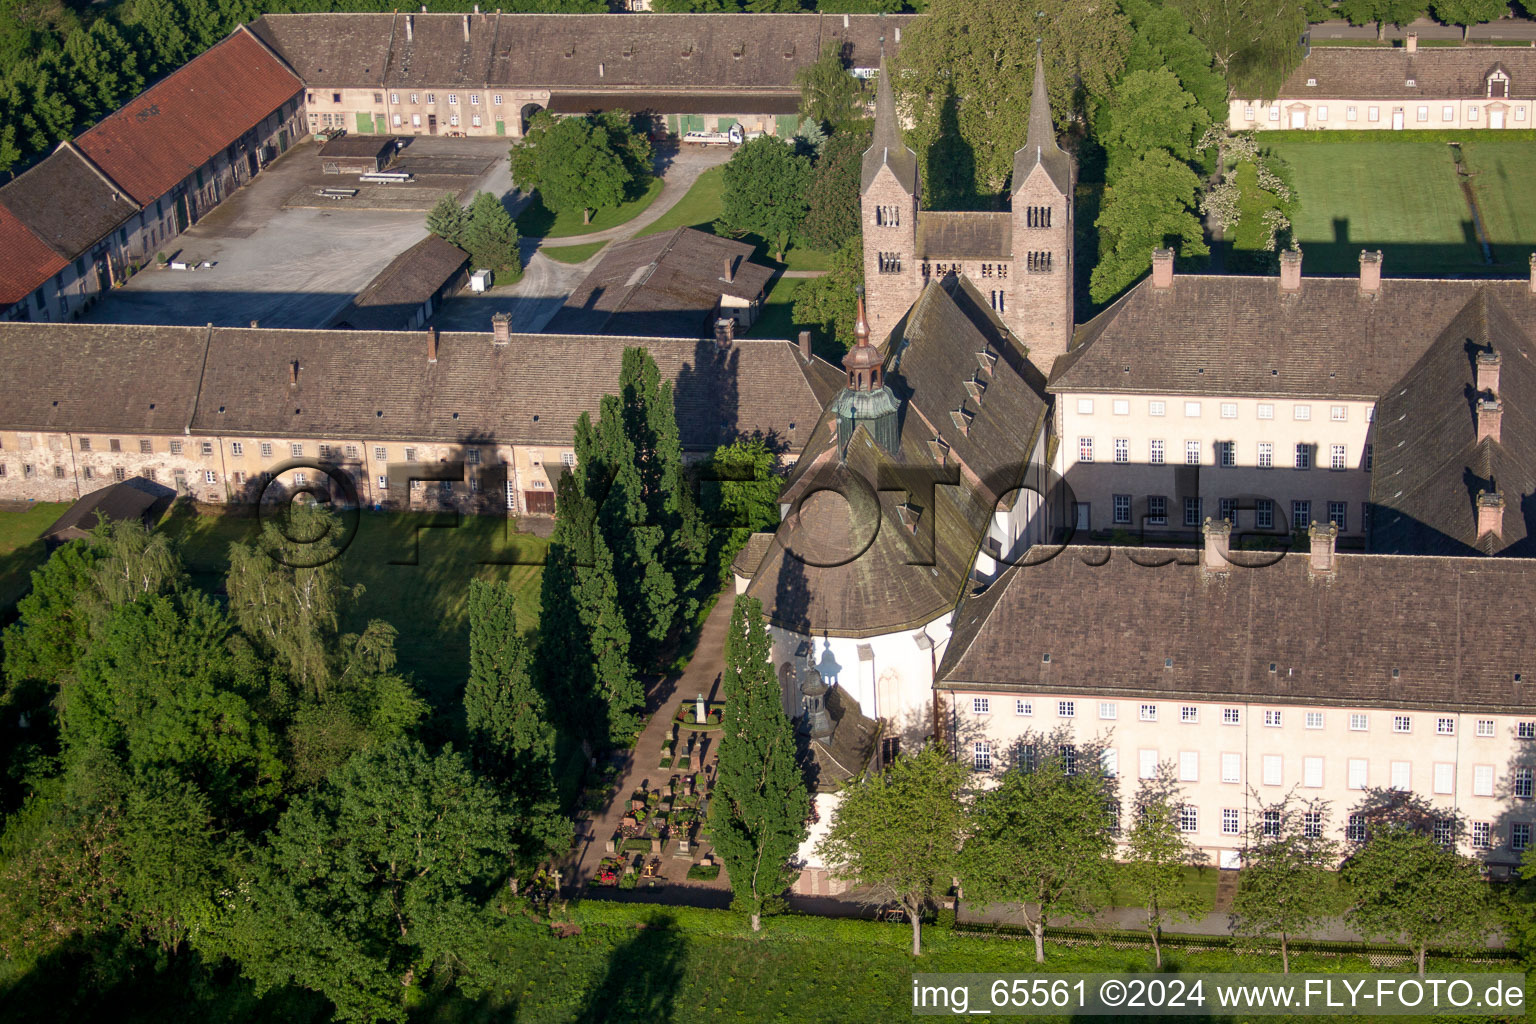 Luftaufnahme von Gebäudekomplex des Klosters Schloss/Kloster Corvey (UNESCO Weltkulturerbe) in Höxter - NRW im Bundesland Nordrhein-Westfalen, Deutschland